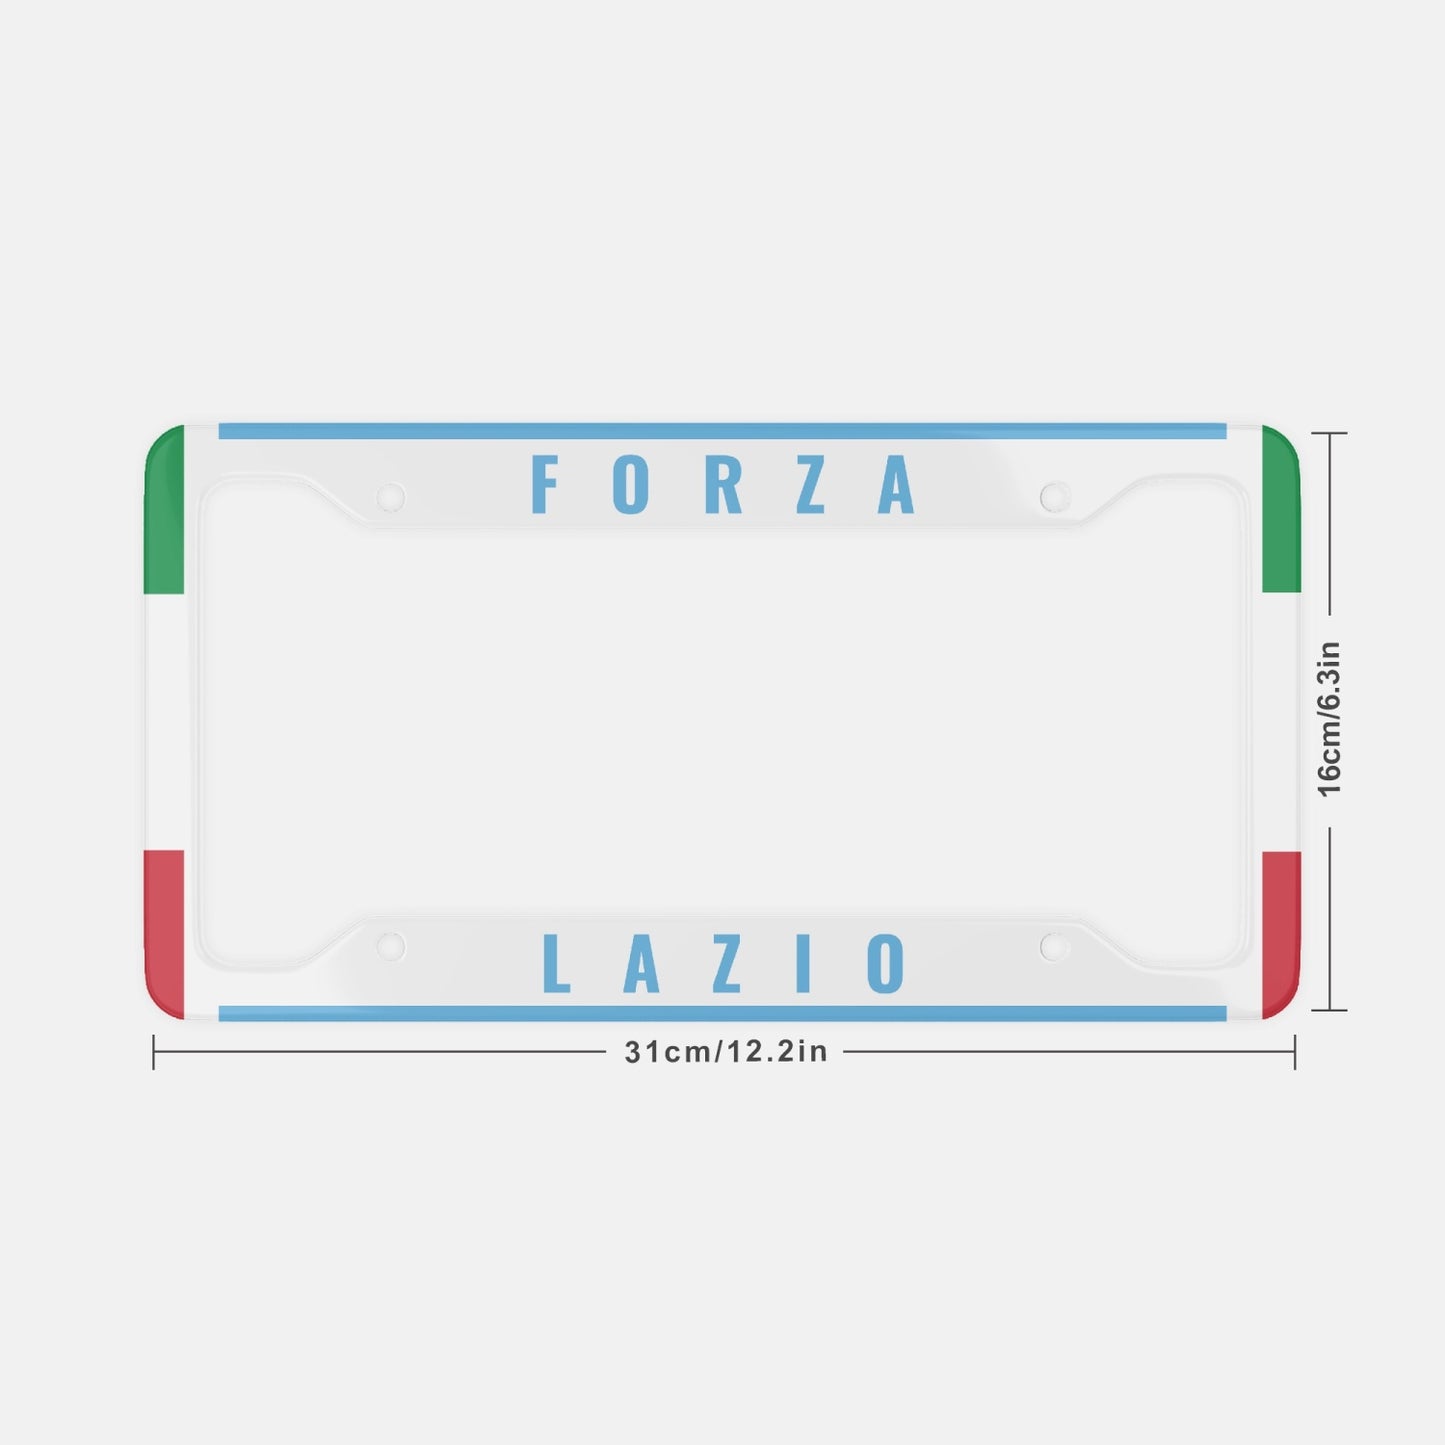 Forza Lazio License Plate Frame